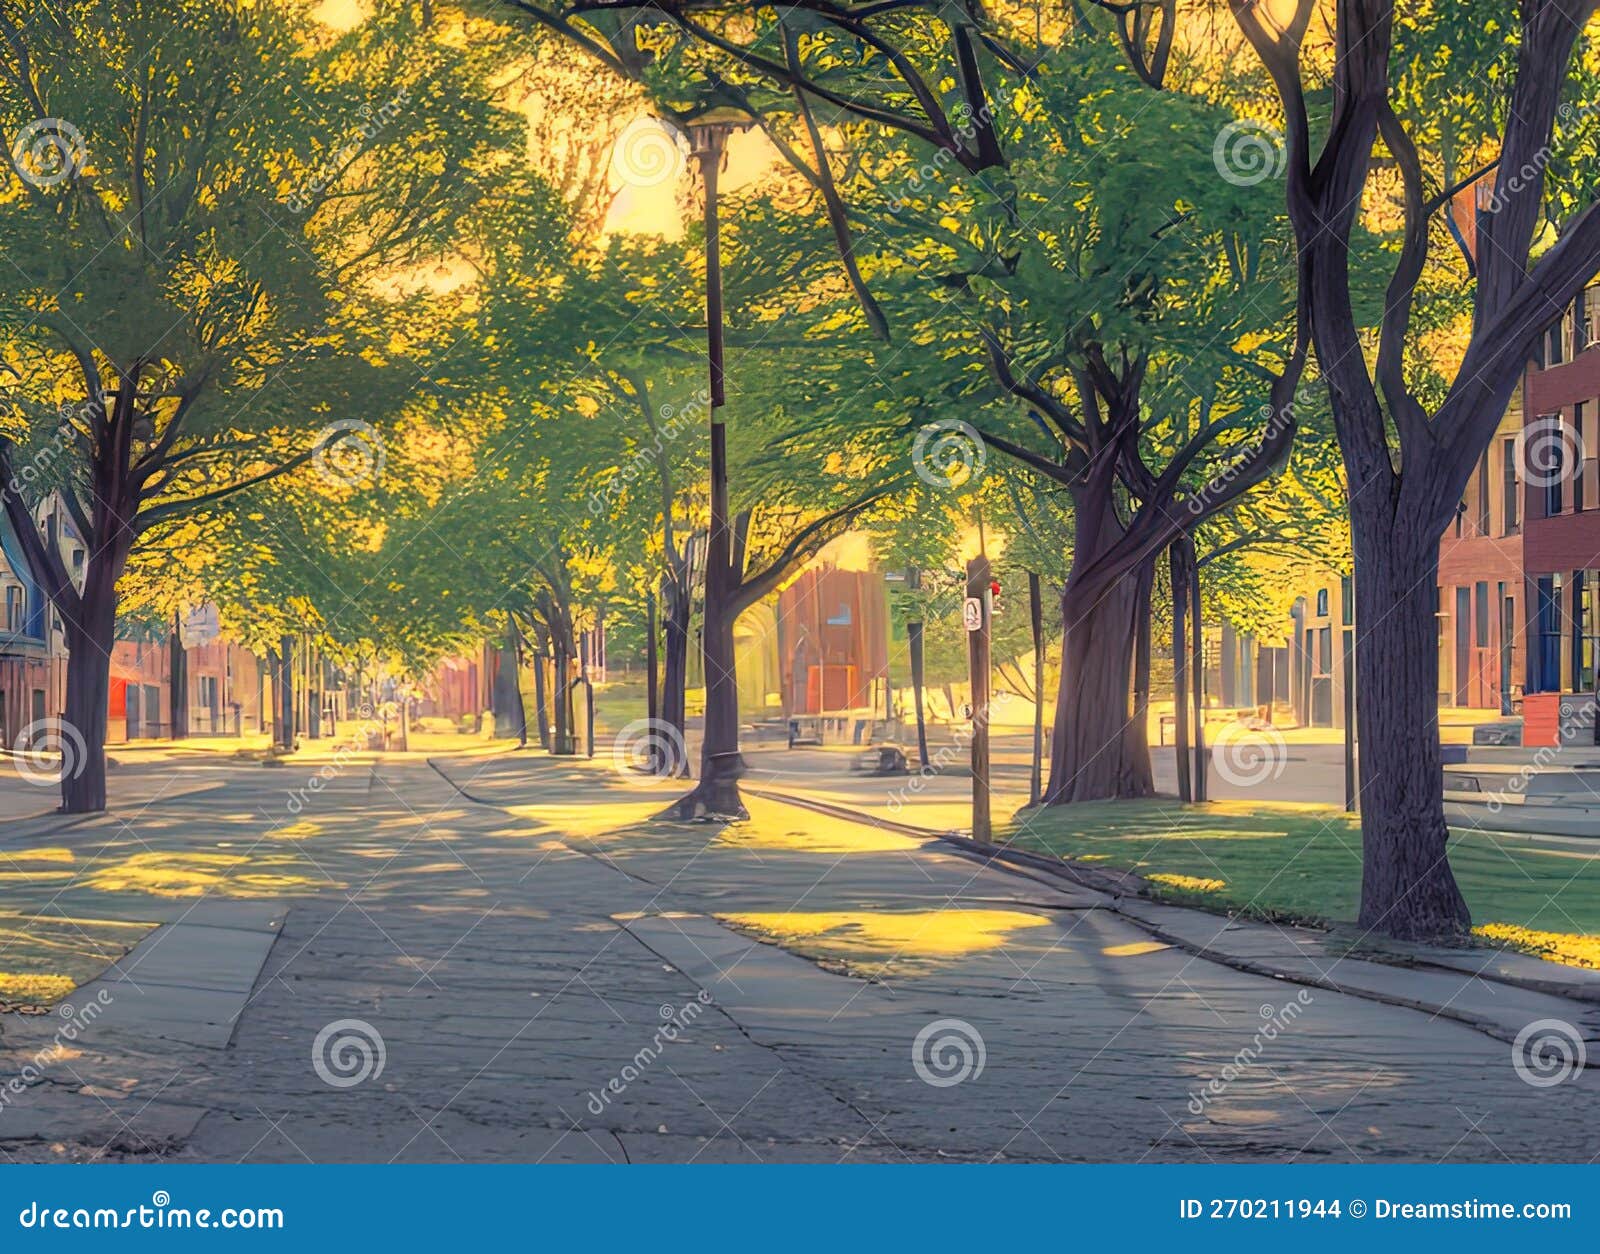 Berkley Neighborhood in Washington, District of Columbia USA. Stock  Illustration - Illustration of sunlight, tree: 270211944